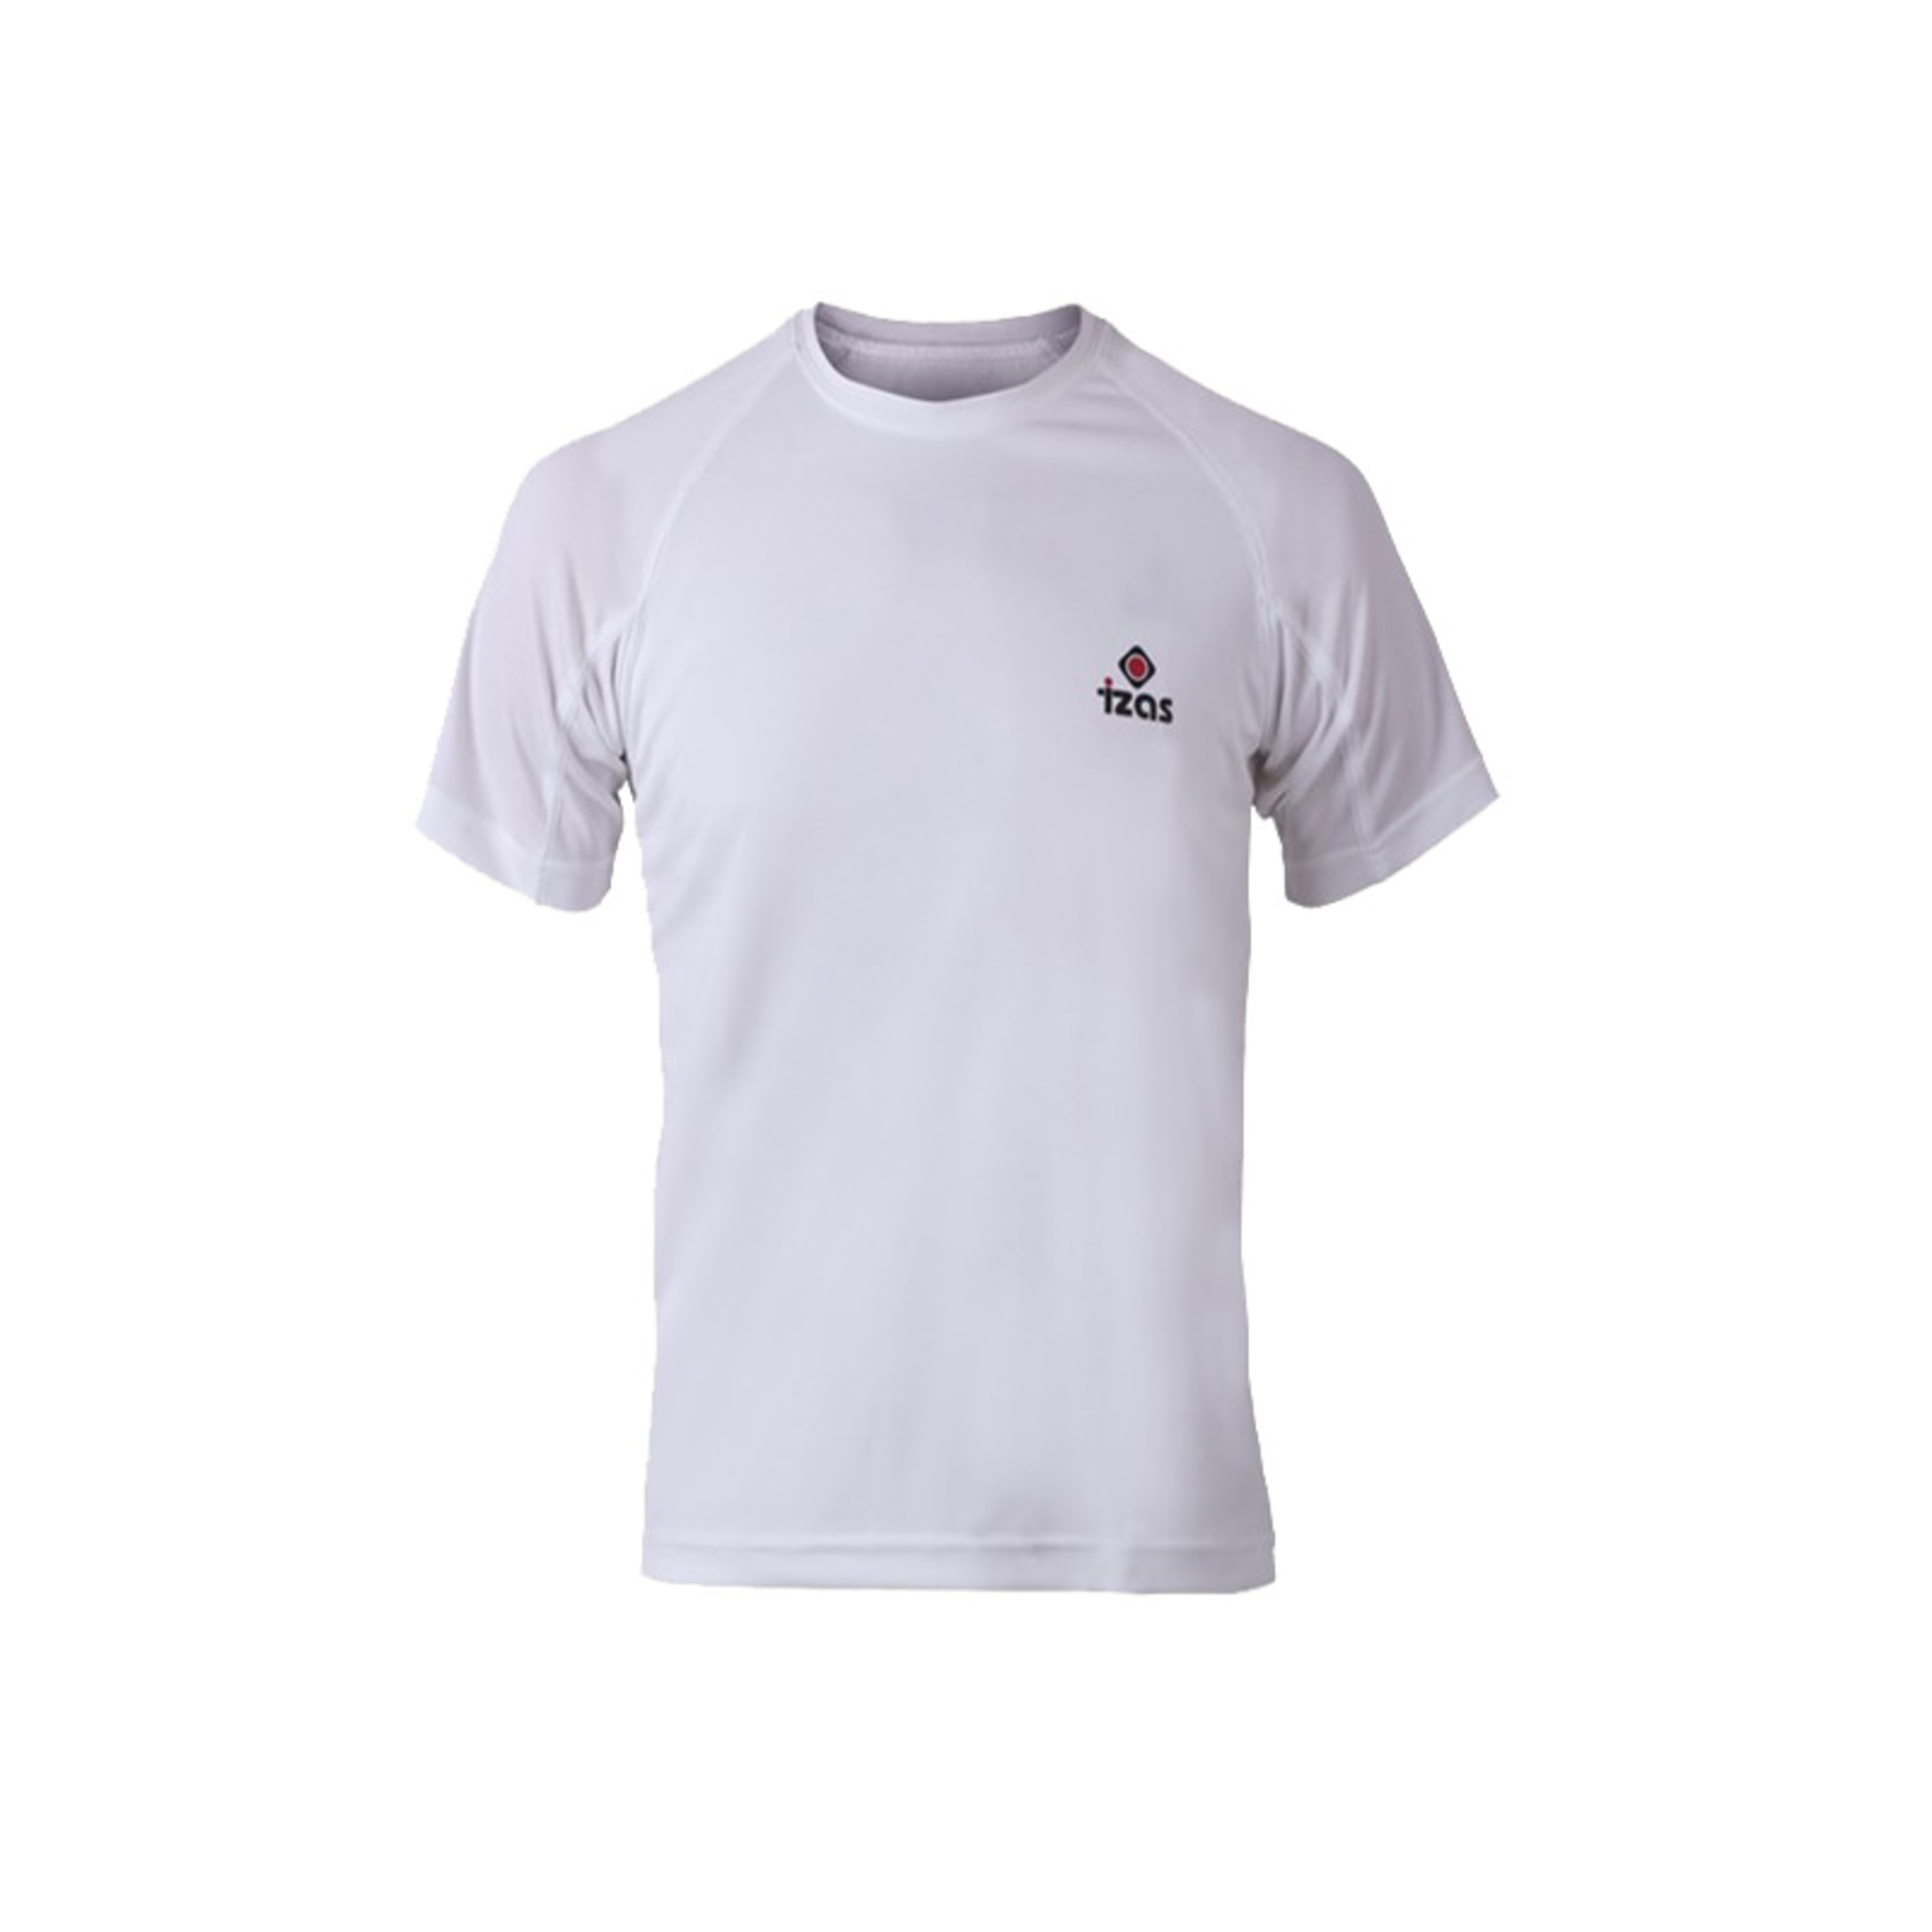 Outlet Camiseta Manga Corta Creus Izas - Blanco - Creus  MKP